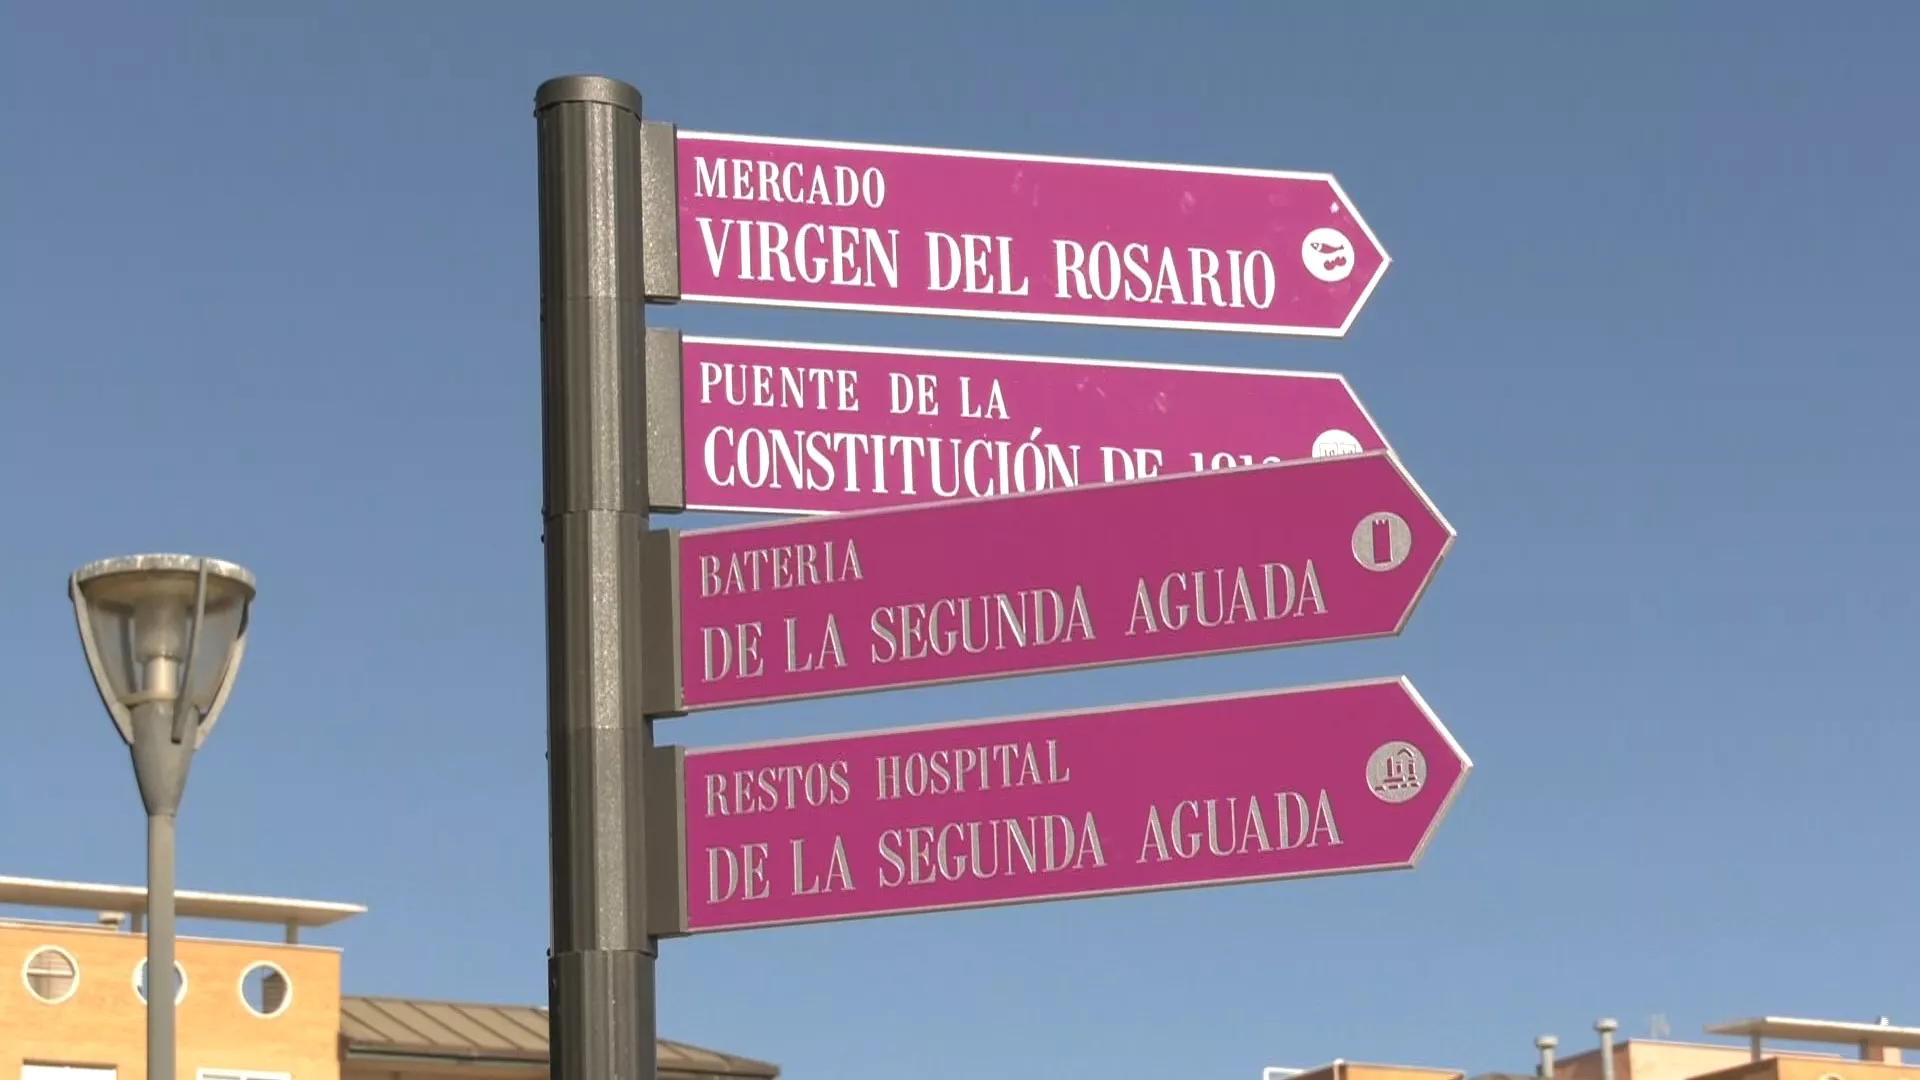 El Ayuntamiento instala nueva señalética para indicar la Batería y el Hospital de Segunda Aguada como espacios de interés turístico